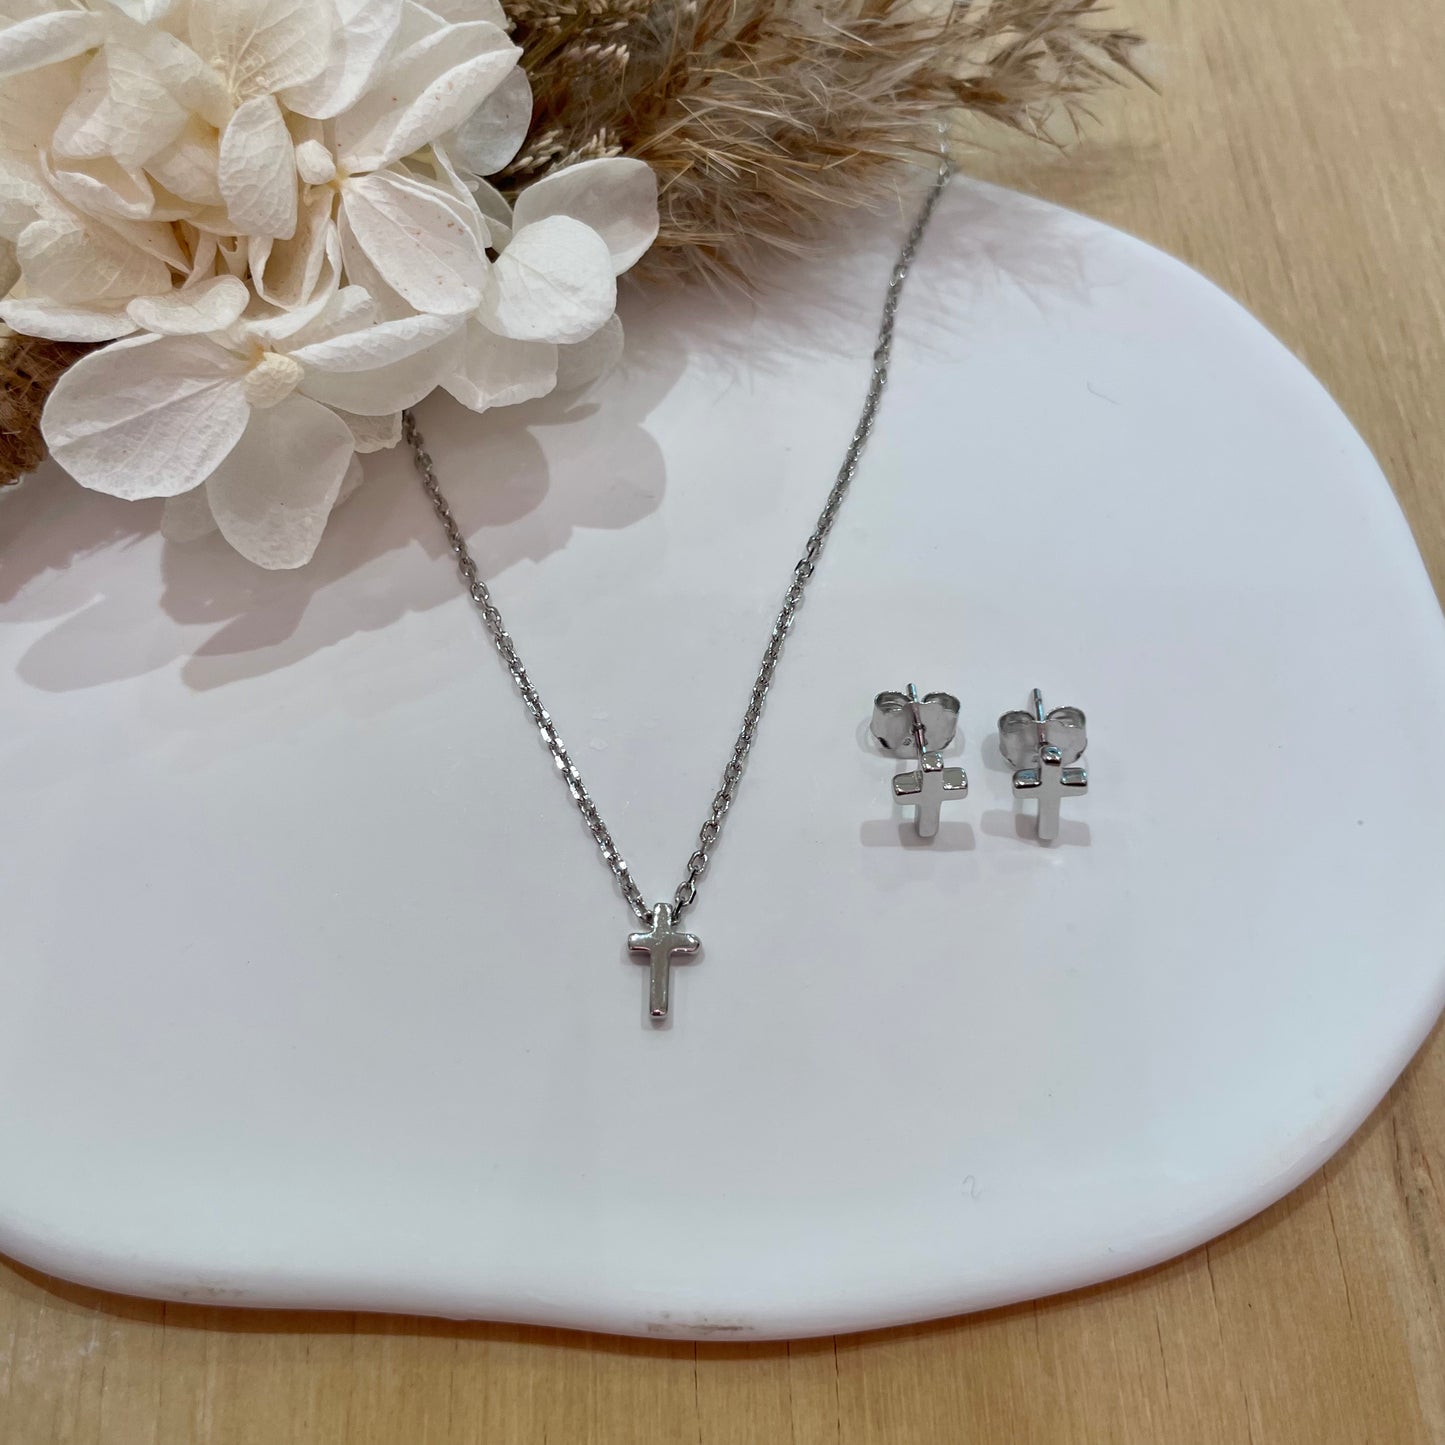 Mini Cross Necklace - Silver